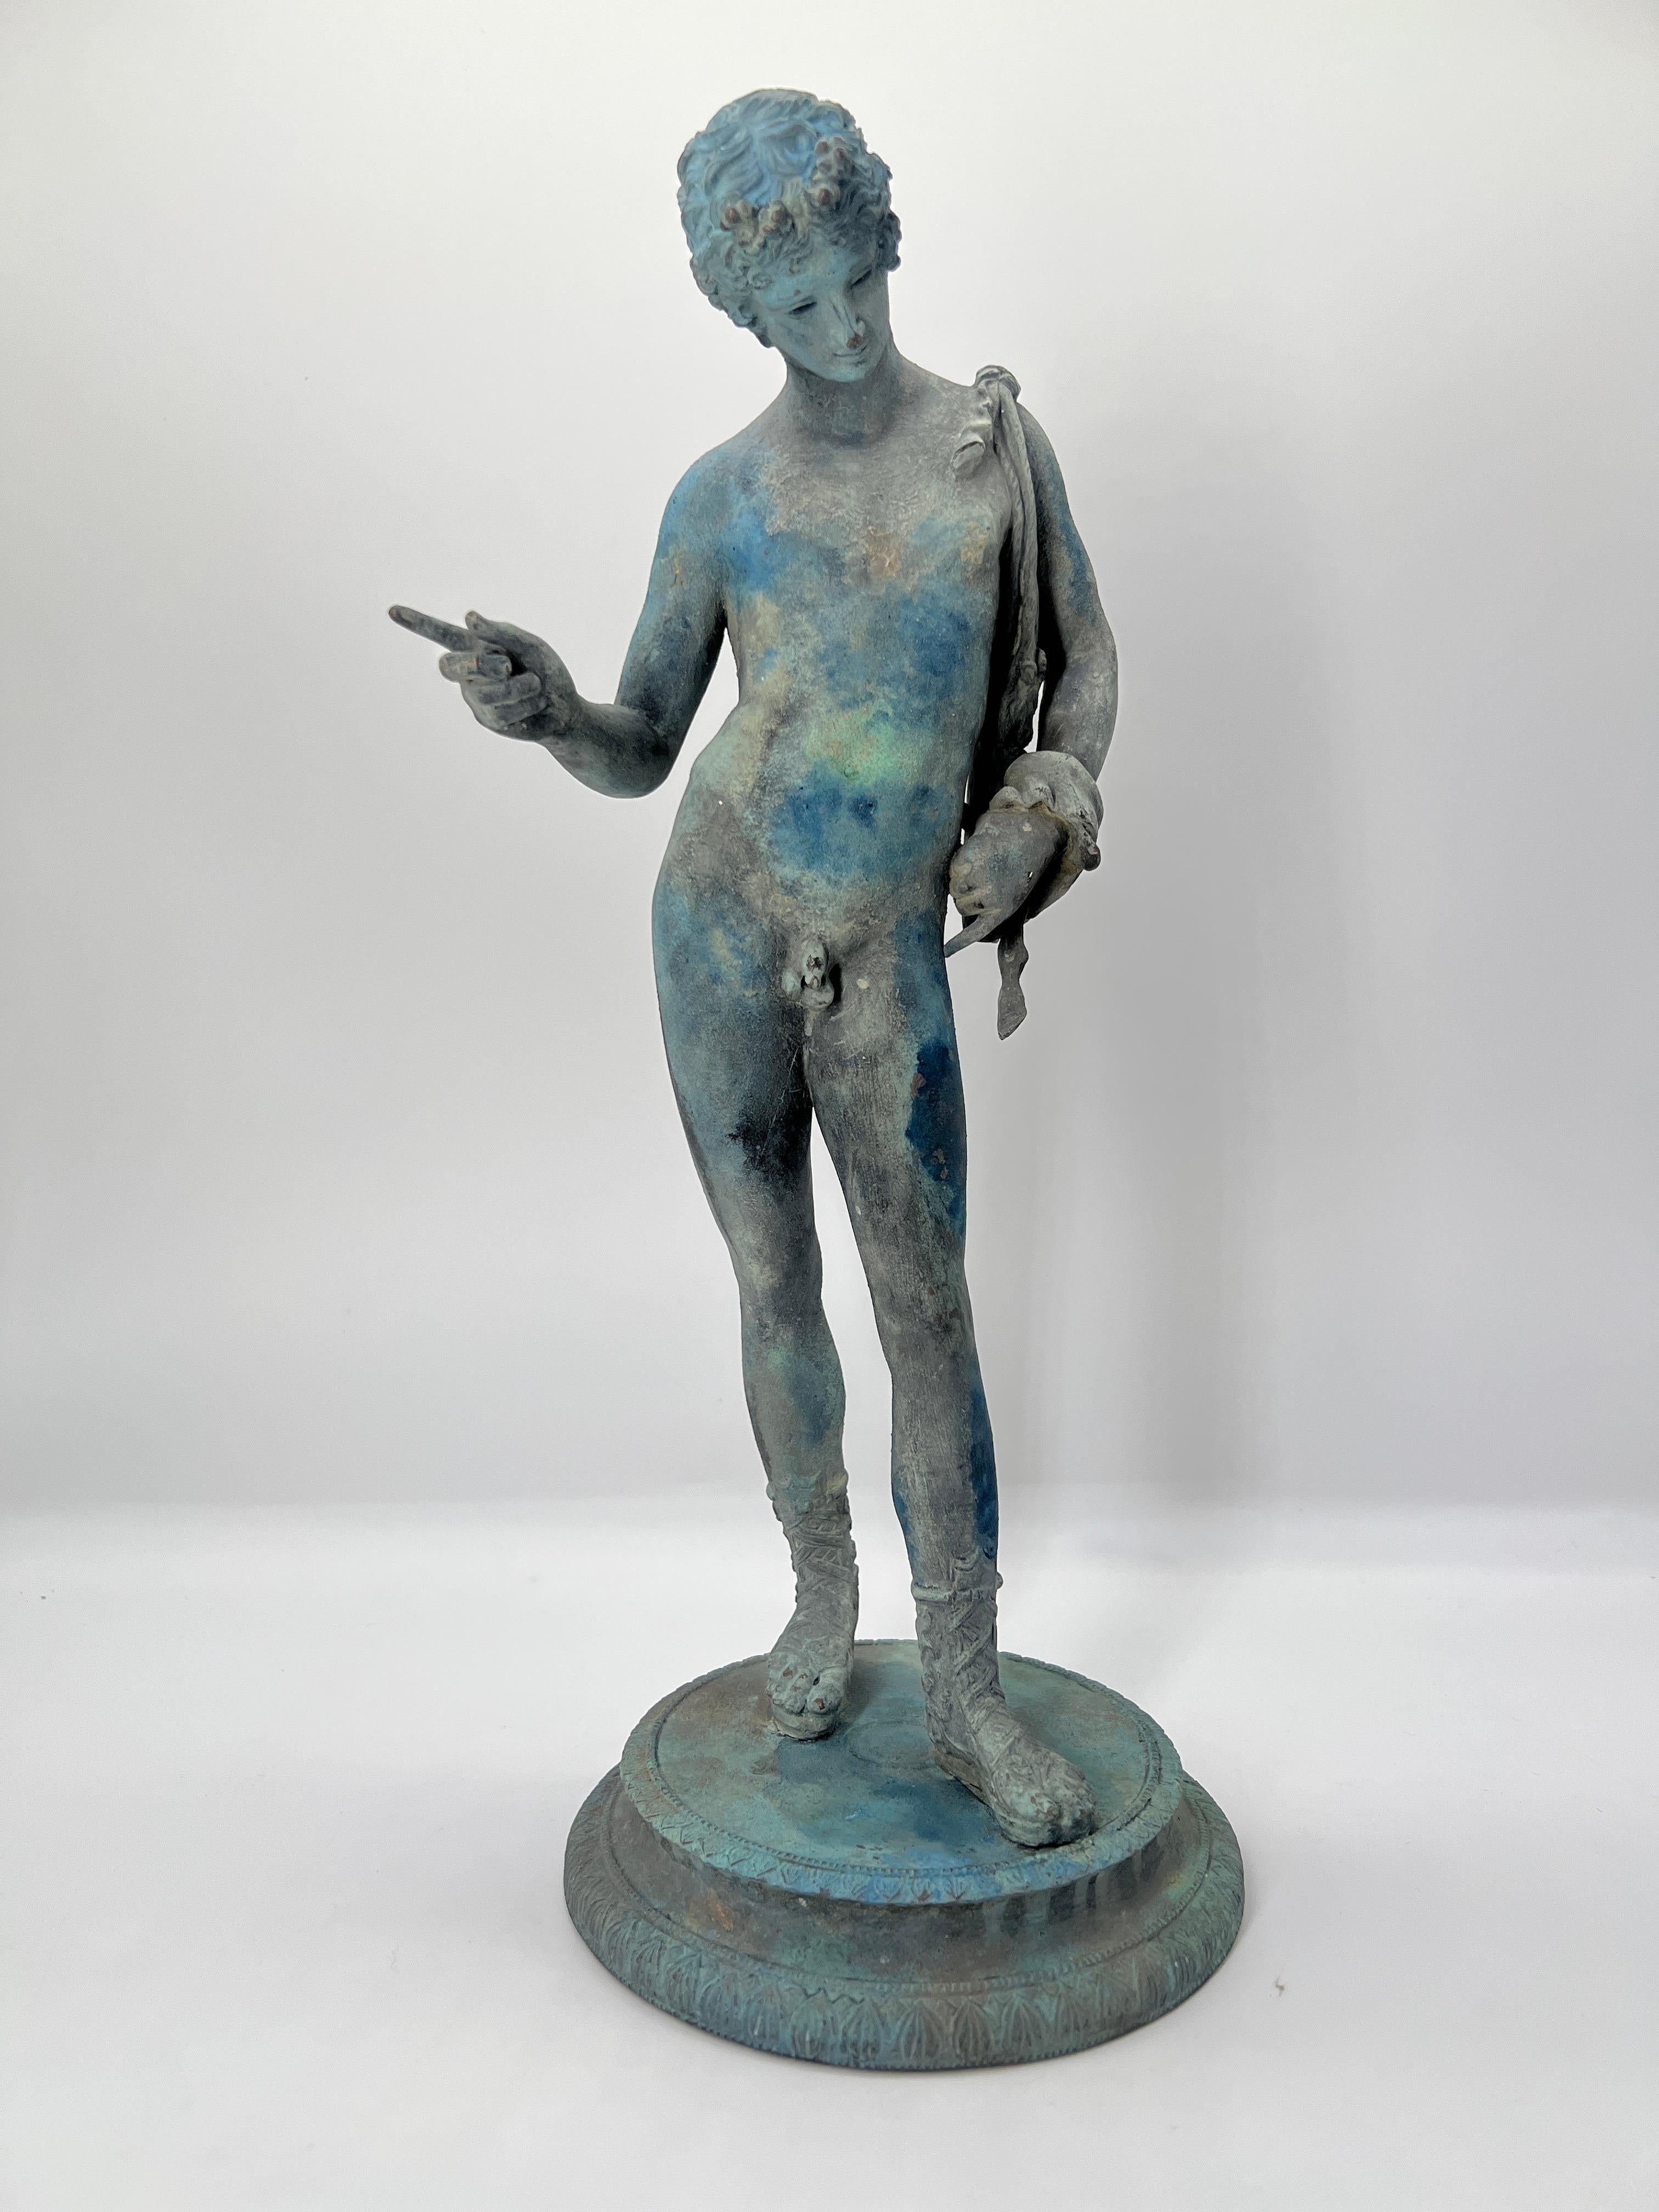 Italienisch, Ende 19. Jahrhundert.

Die patinierte Bronzefigur eines jungen Mannes, der Dionysos (Bacchus) darstellt, der früher für Narziss gehalten wurde, ist eine 